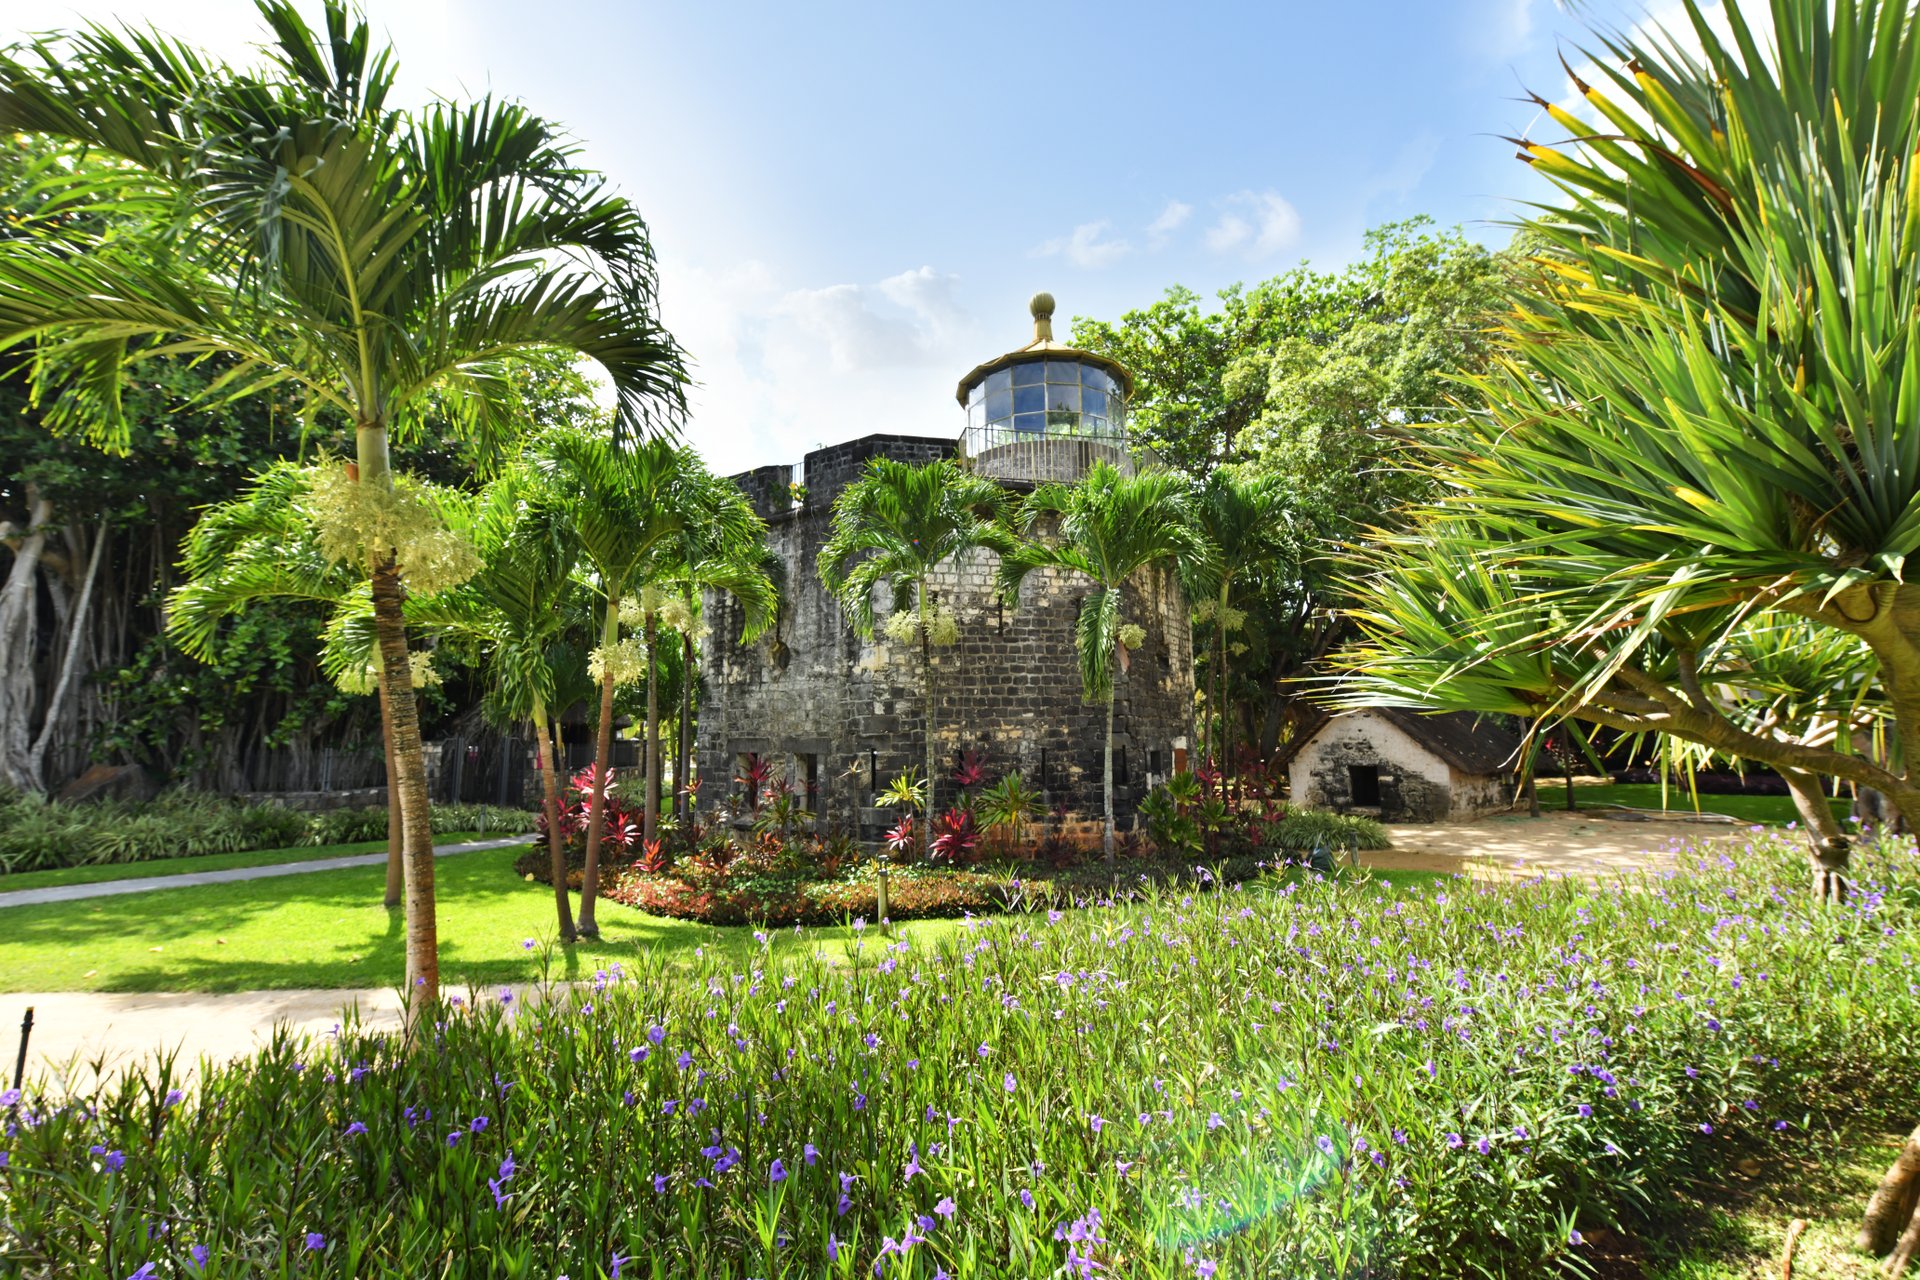 Тропічний сад площею 17 акрів, де історія цього місця відображена в залишках фортифікаційних споруд і гармат.